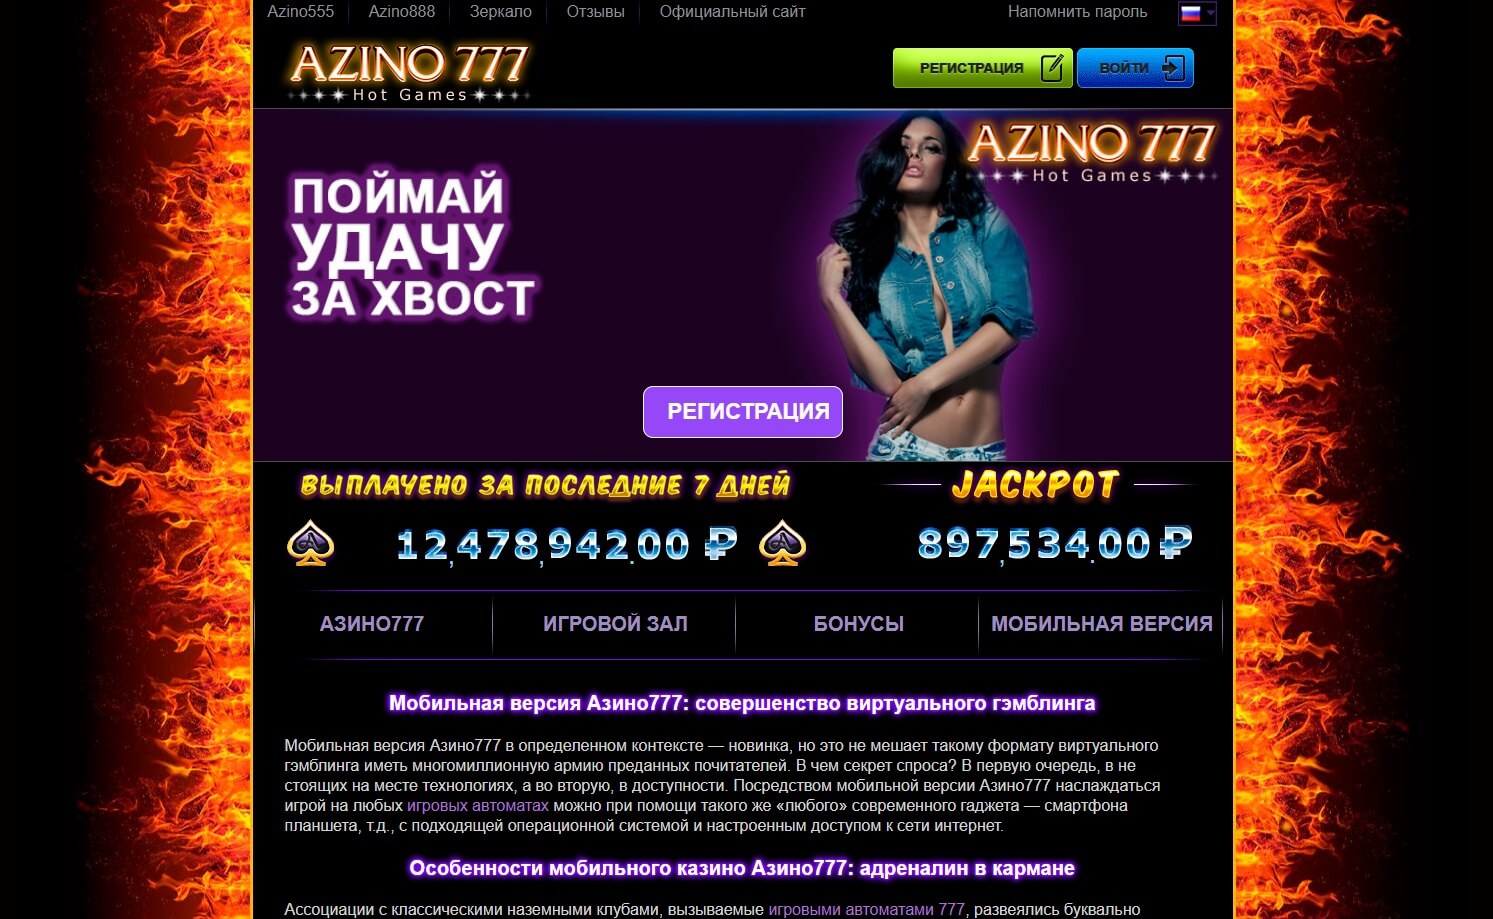 Azino777 мобильная версия сайта casino azino777. Azino777 мобильная. Казино азино777 мобильная версия. Азино777 бонус 777. Азино777 мобильная версия зеркало.